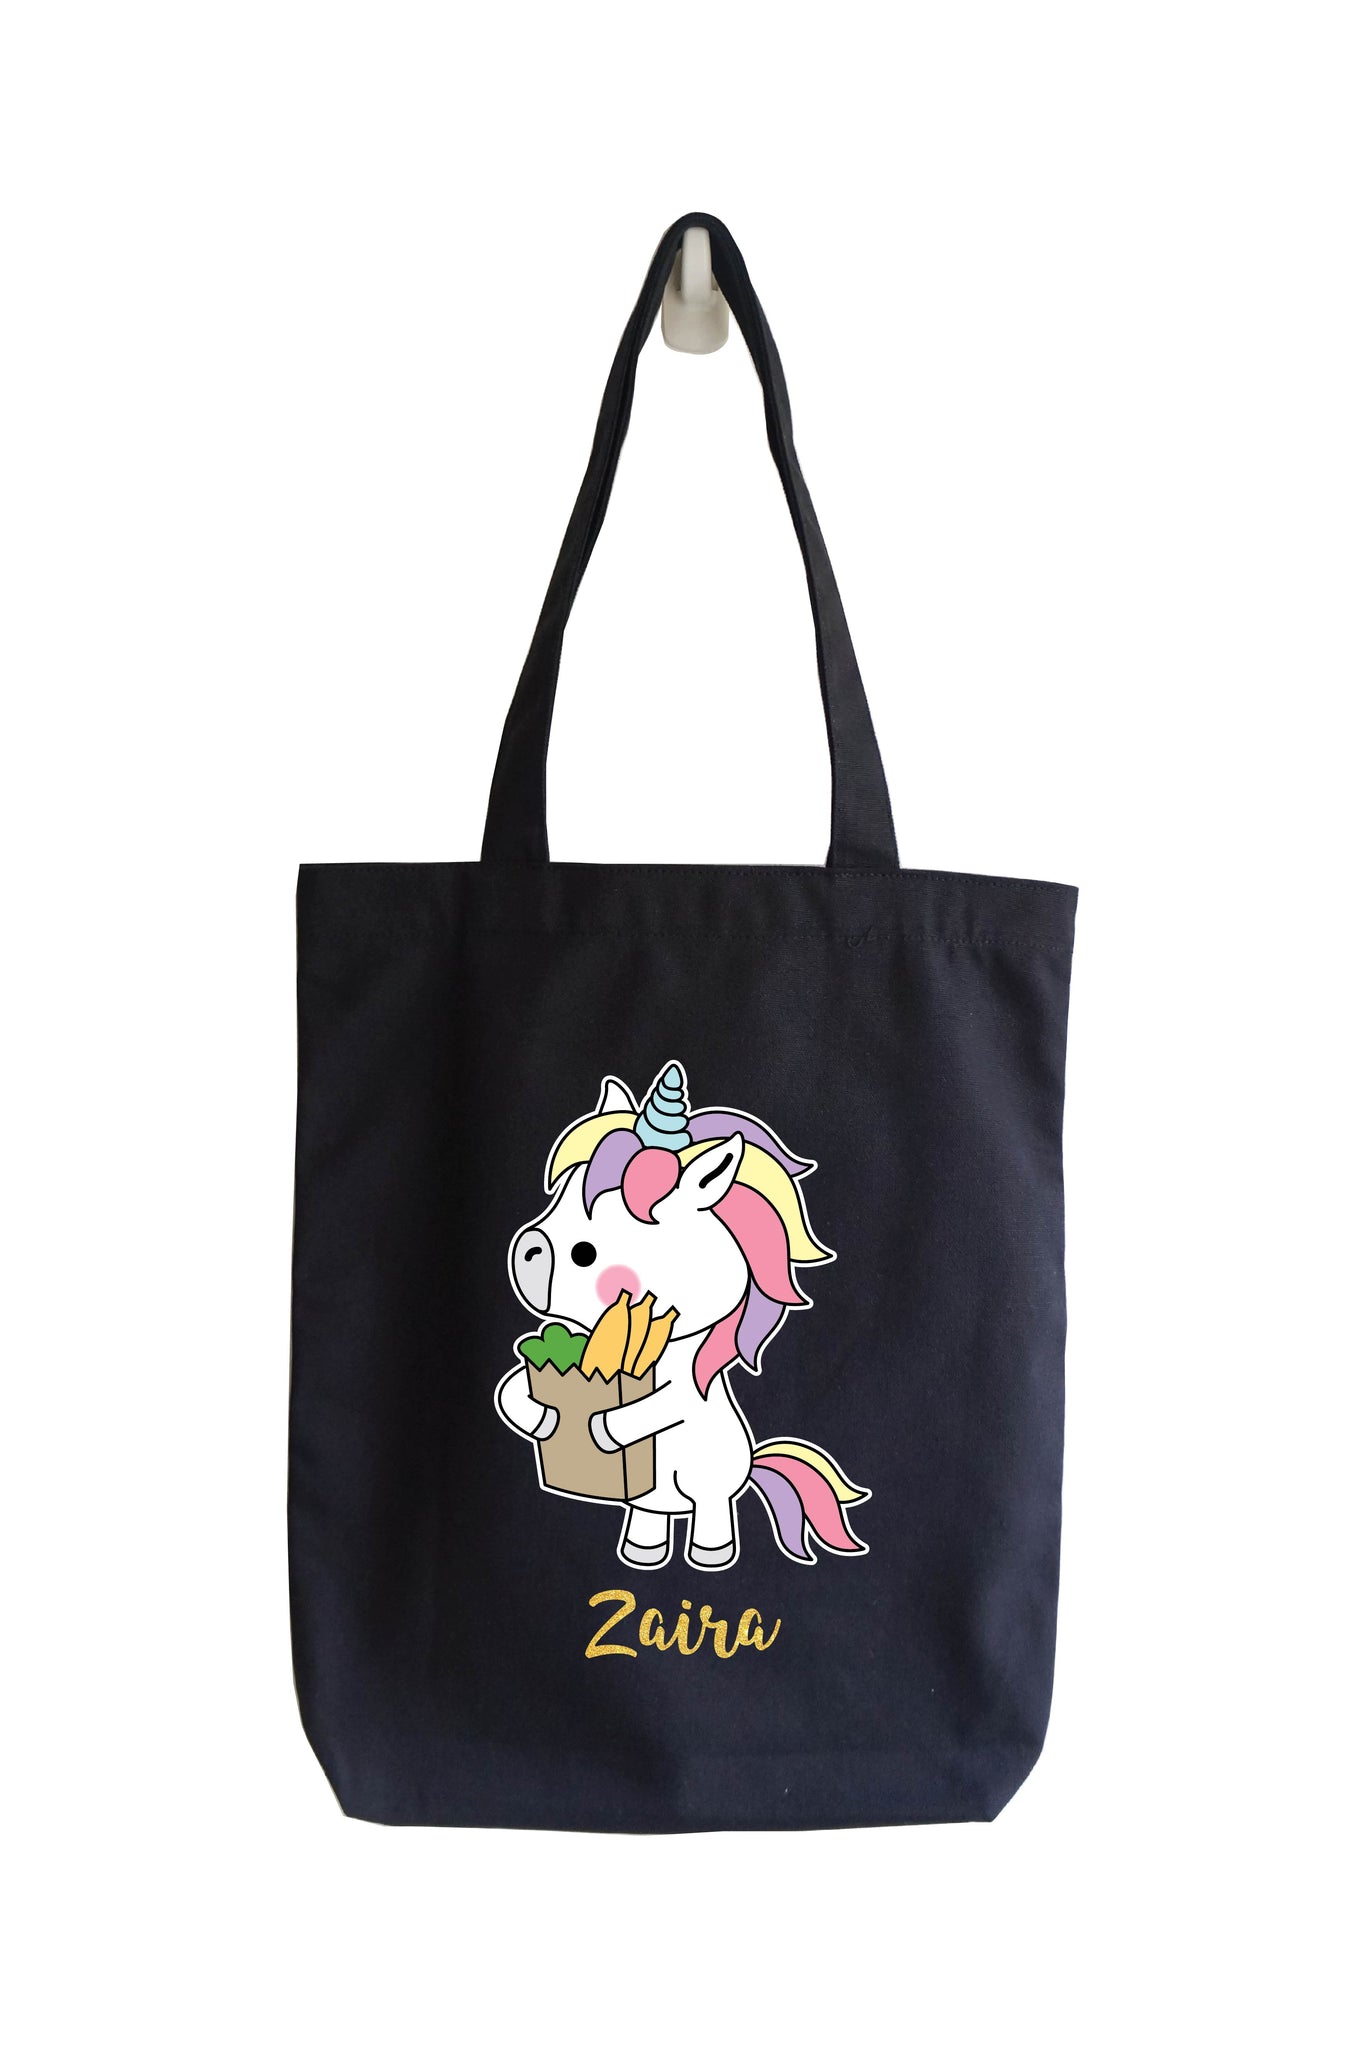 Personalised Tote Bag - Urban Unicorn (Go Pasar)